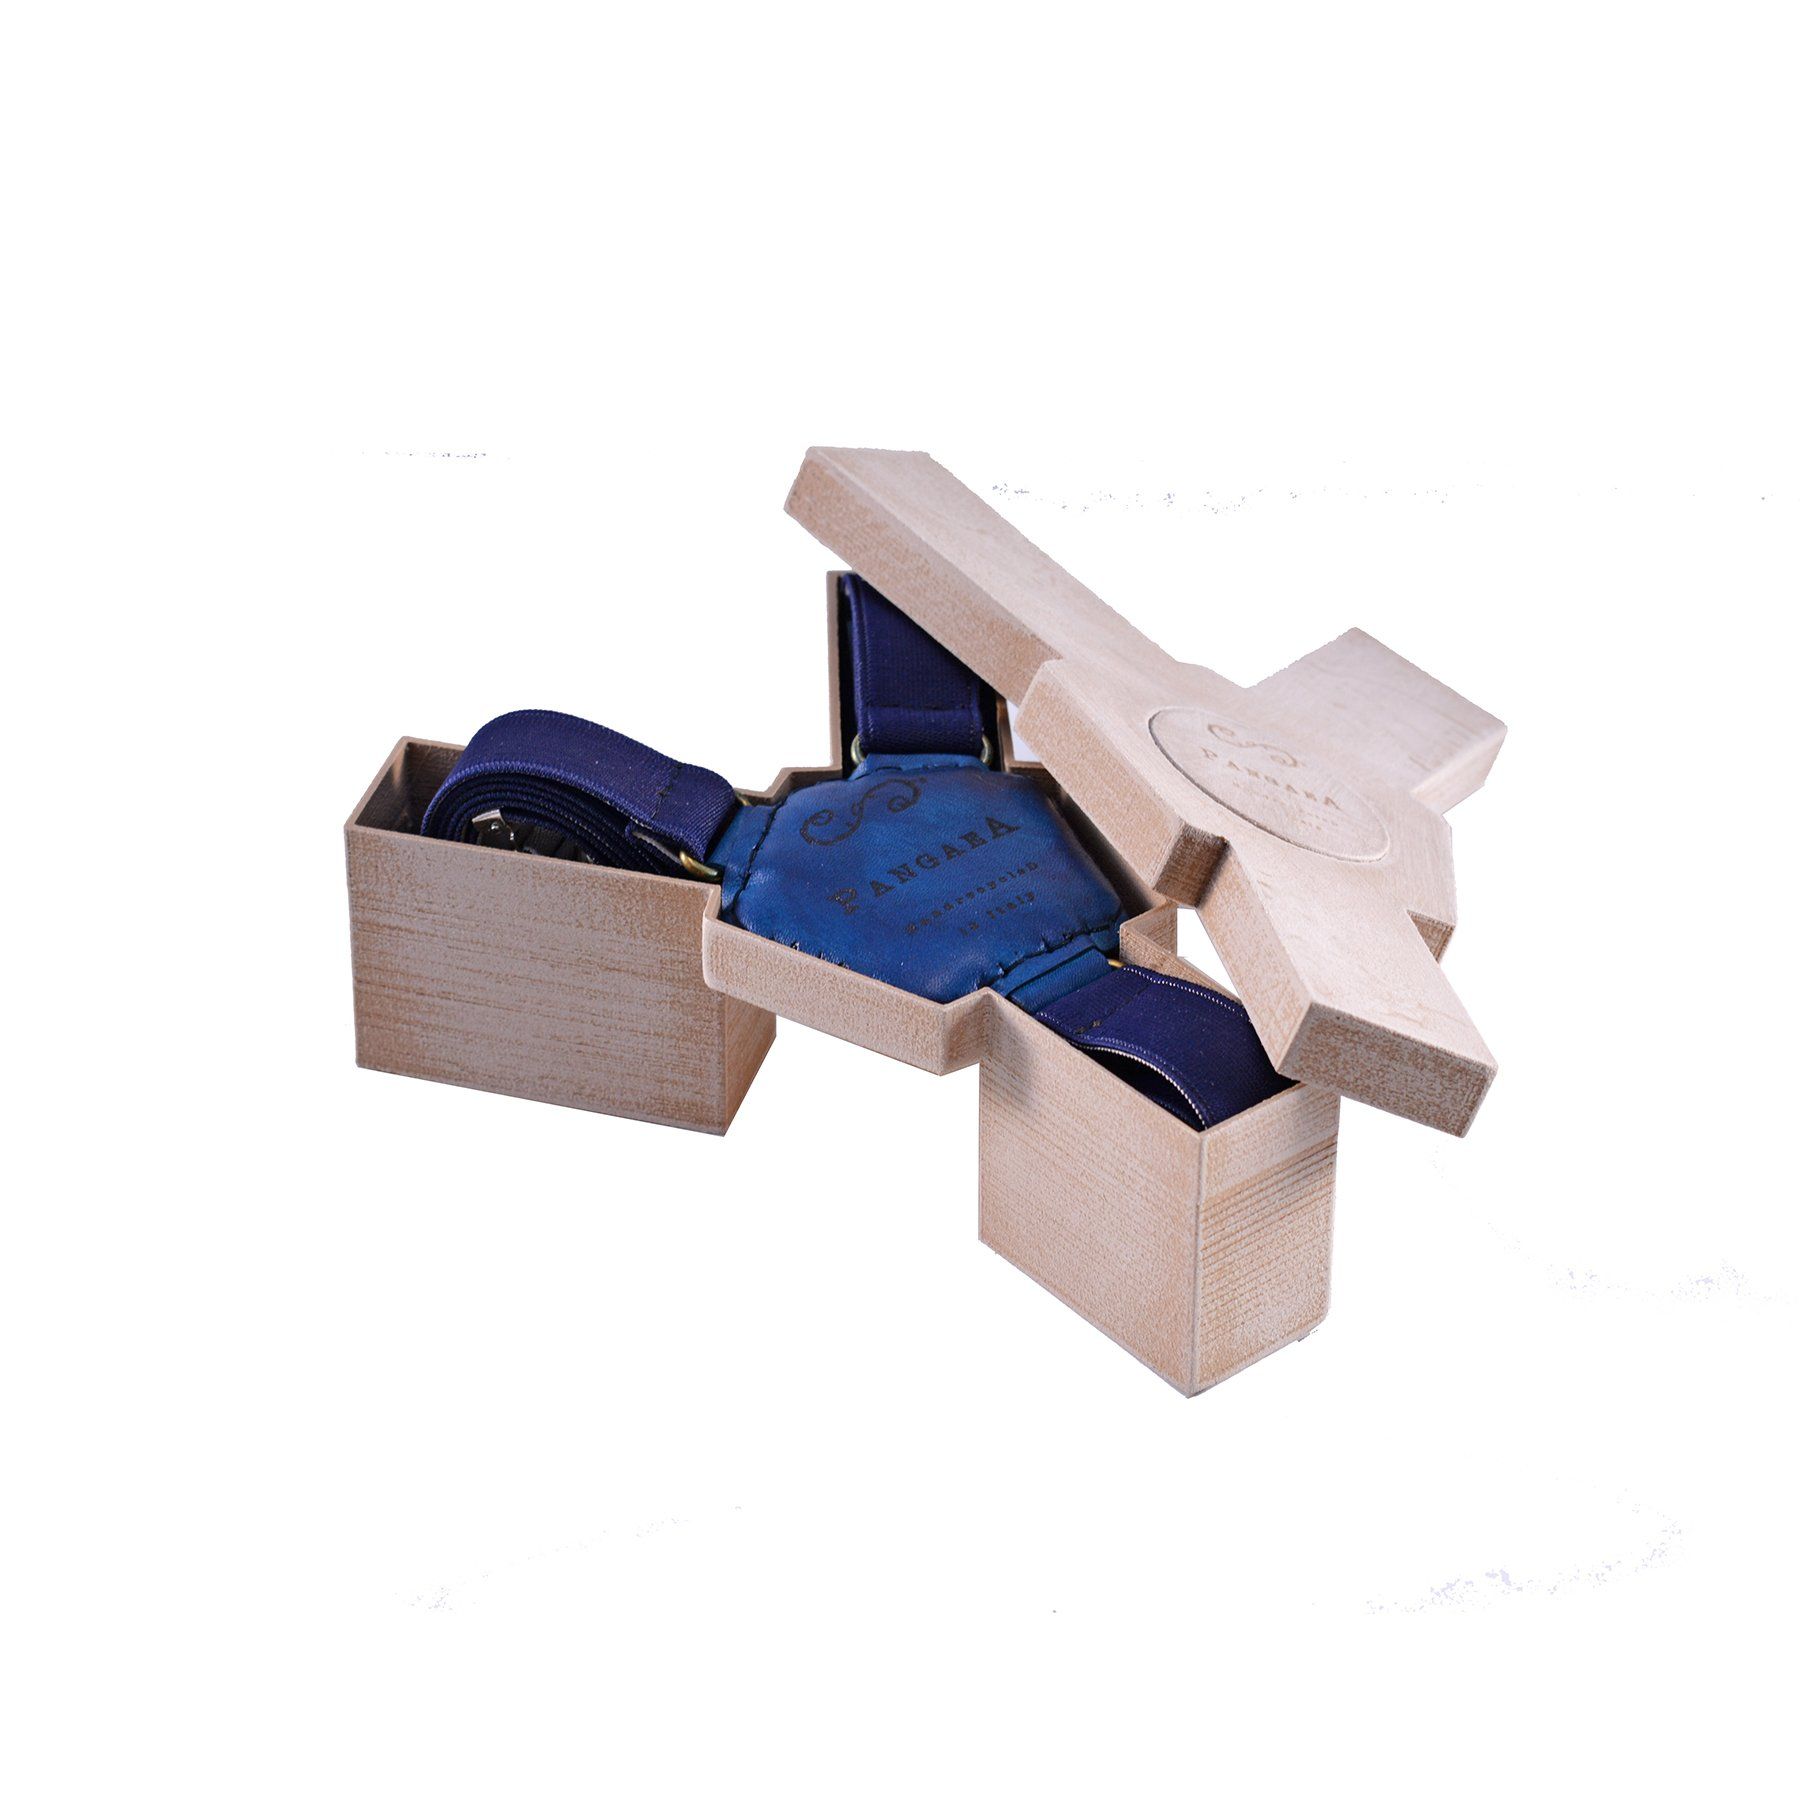 pangaea bretelle tiracche in pelle blu materiale riciclato scatola pla legno